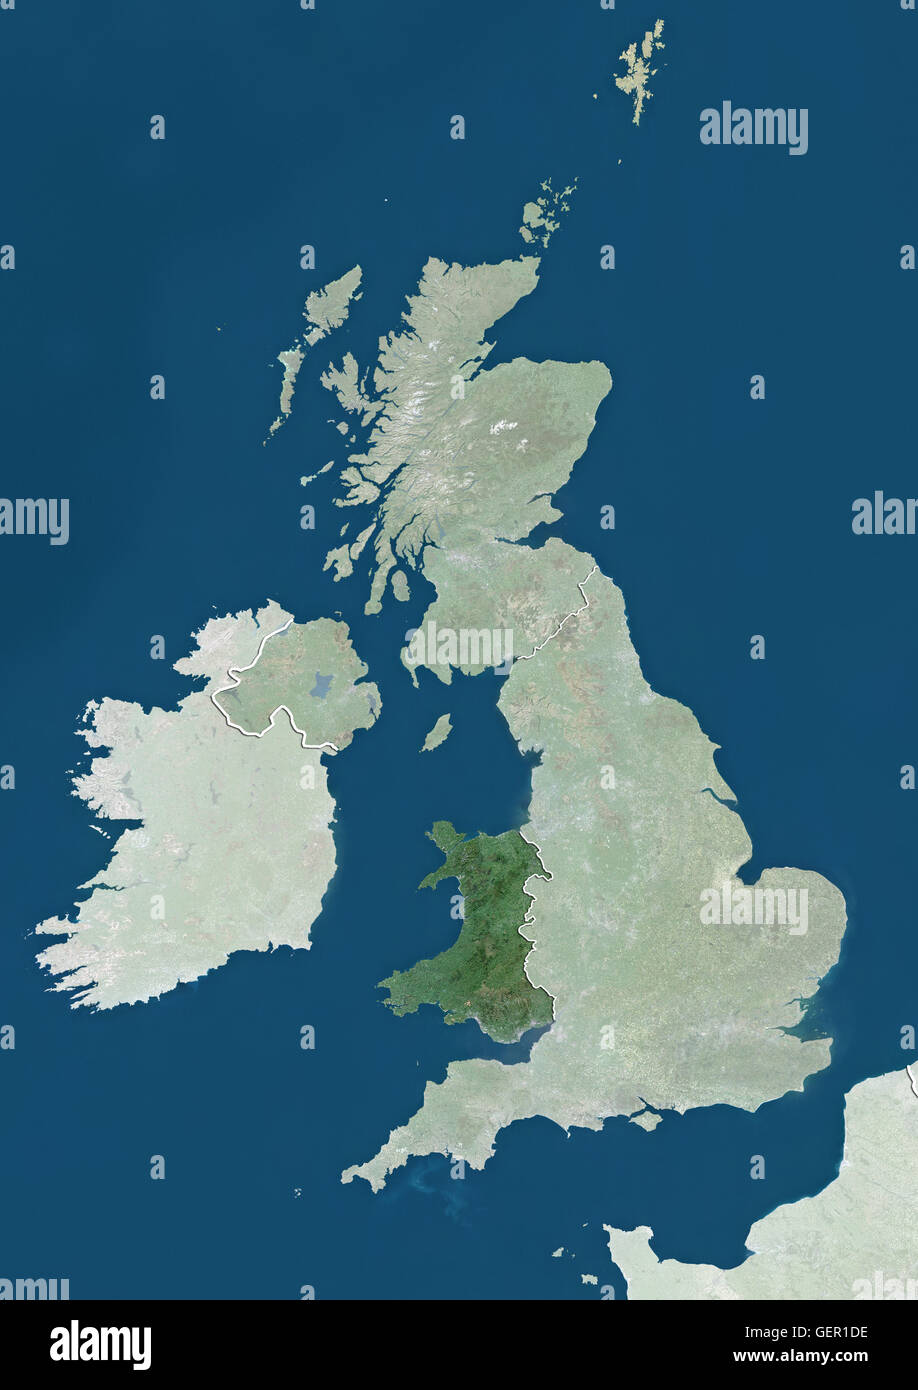 Vista satellitare del Galles, UK (con confini tra paesi e maschera). L'immagine evidenzia il Galles nel Regno Unito. Questa immagine è stata elaborata sulla base dei dati acquisiti dai satelliti Landsat. Foto Stock